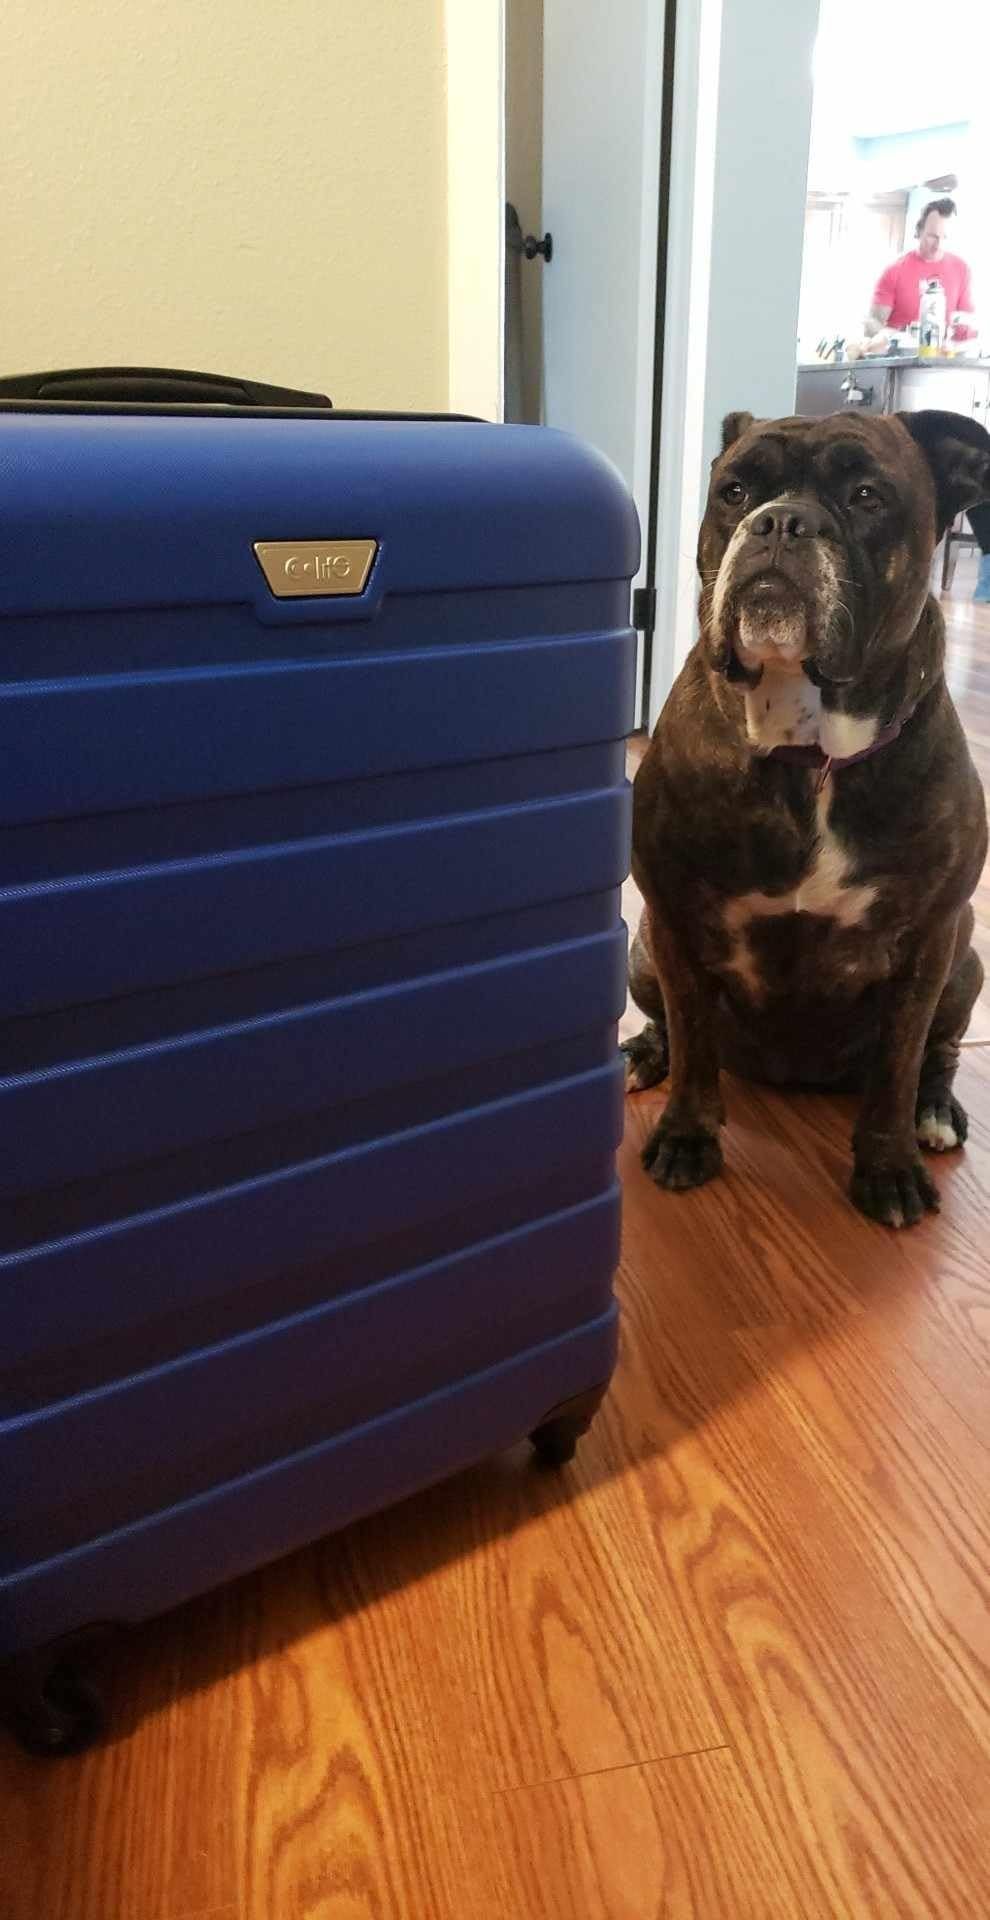 Amazon.com | Coolife Luggage 3 Piece Set Suitcase Spinner Hardshell Lightweight TSA Lock | Luggag... | Amazon (US)